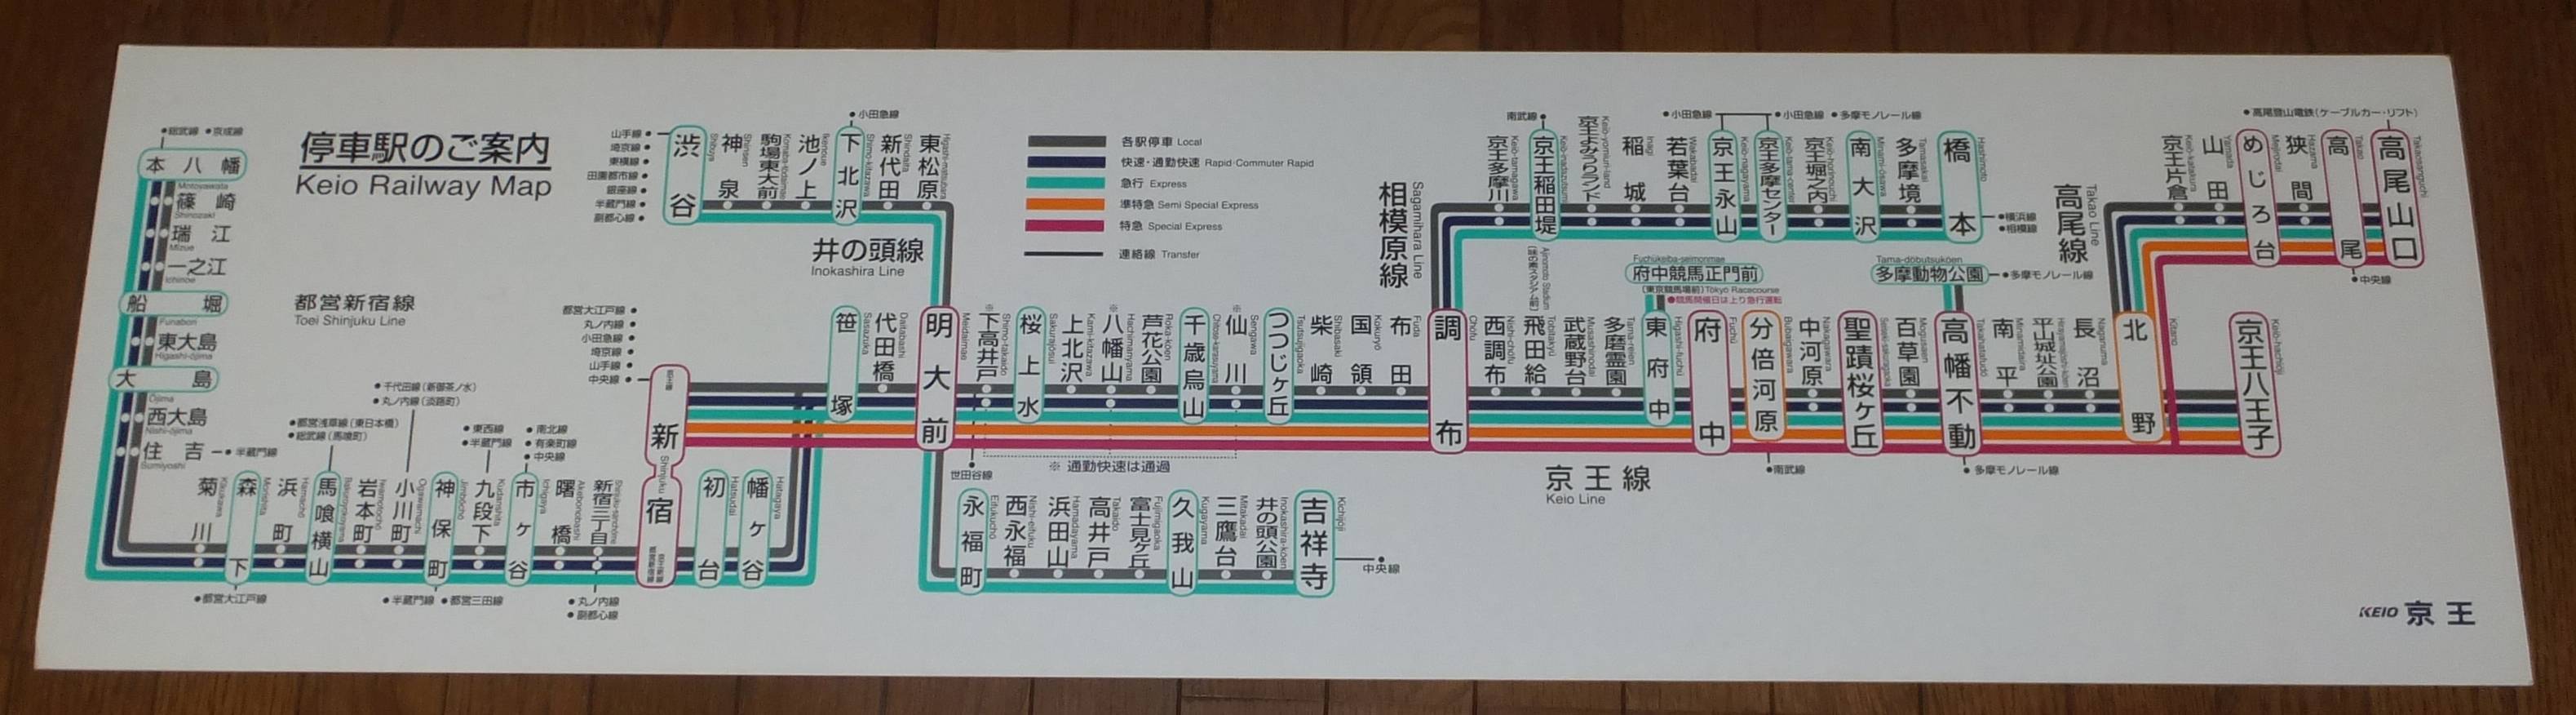 路線図の変遷 京王電鉄 年10月28日追記 画像追加 Icoca飼いました